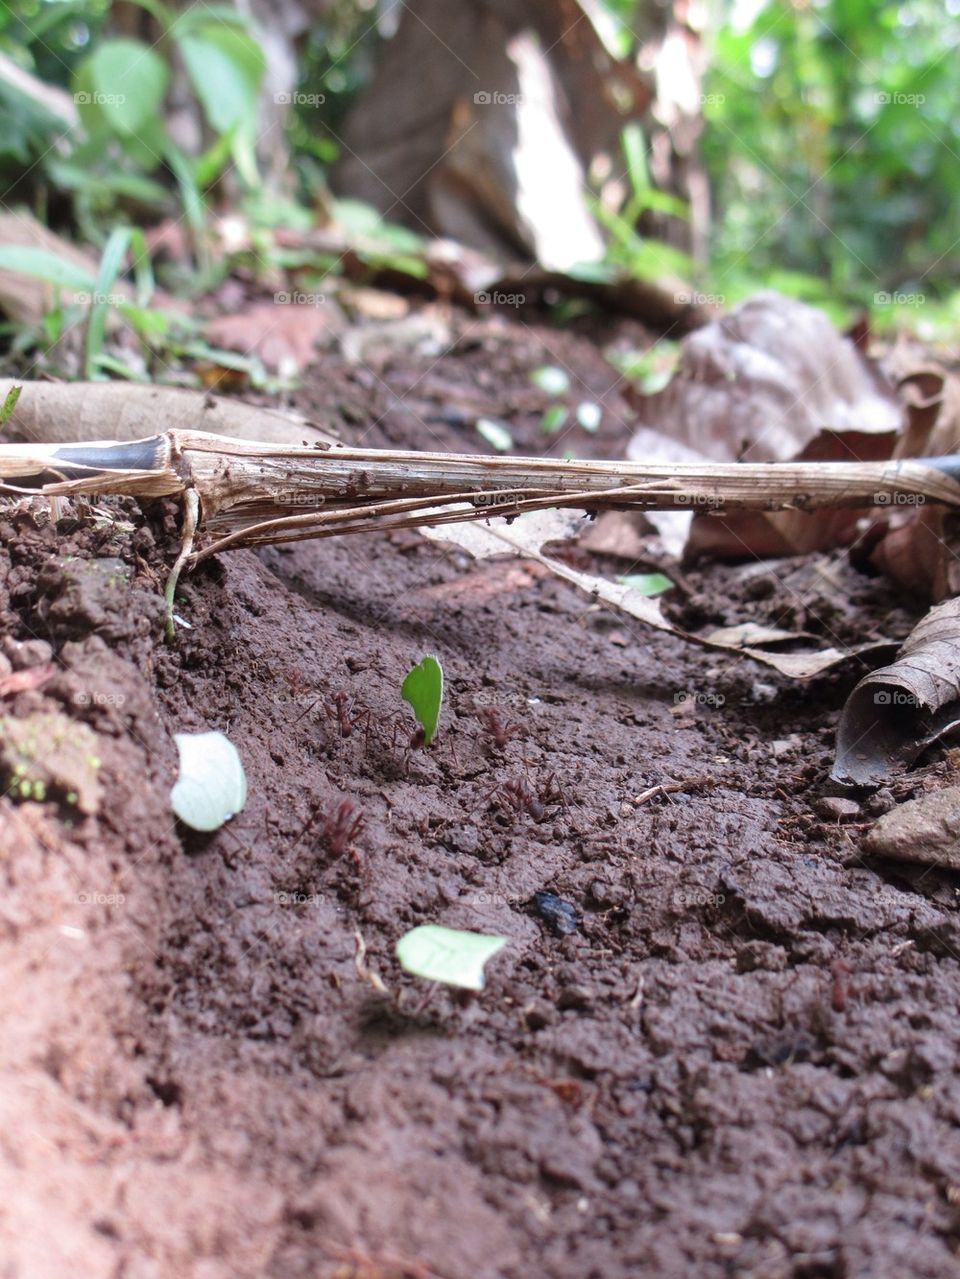 Leaf cutter ants in Costa Rica